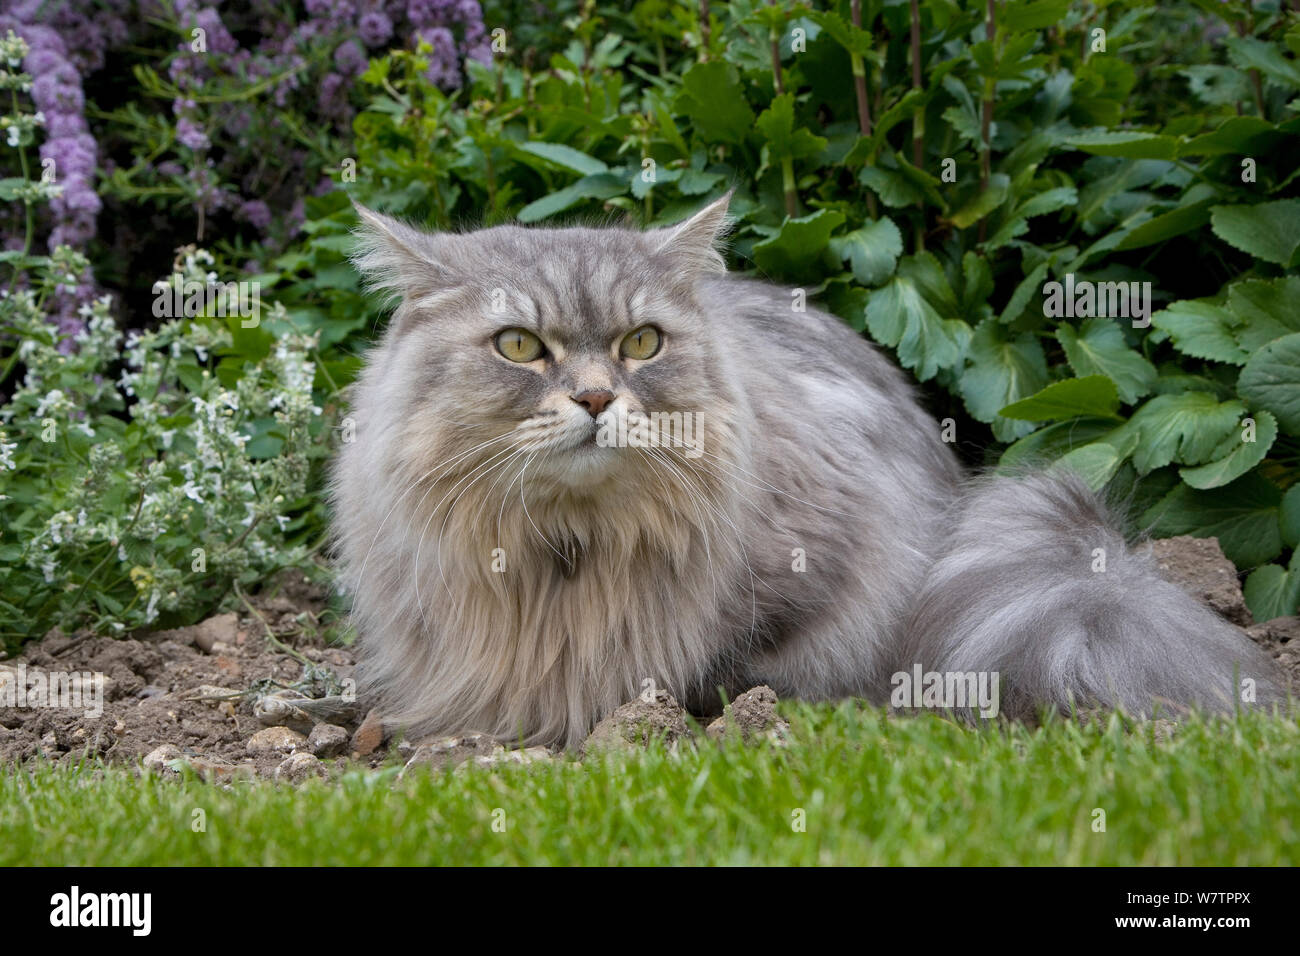 Persian cat sitting in garden, portrait, June. Stock Photo